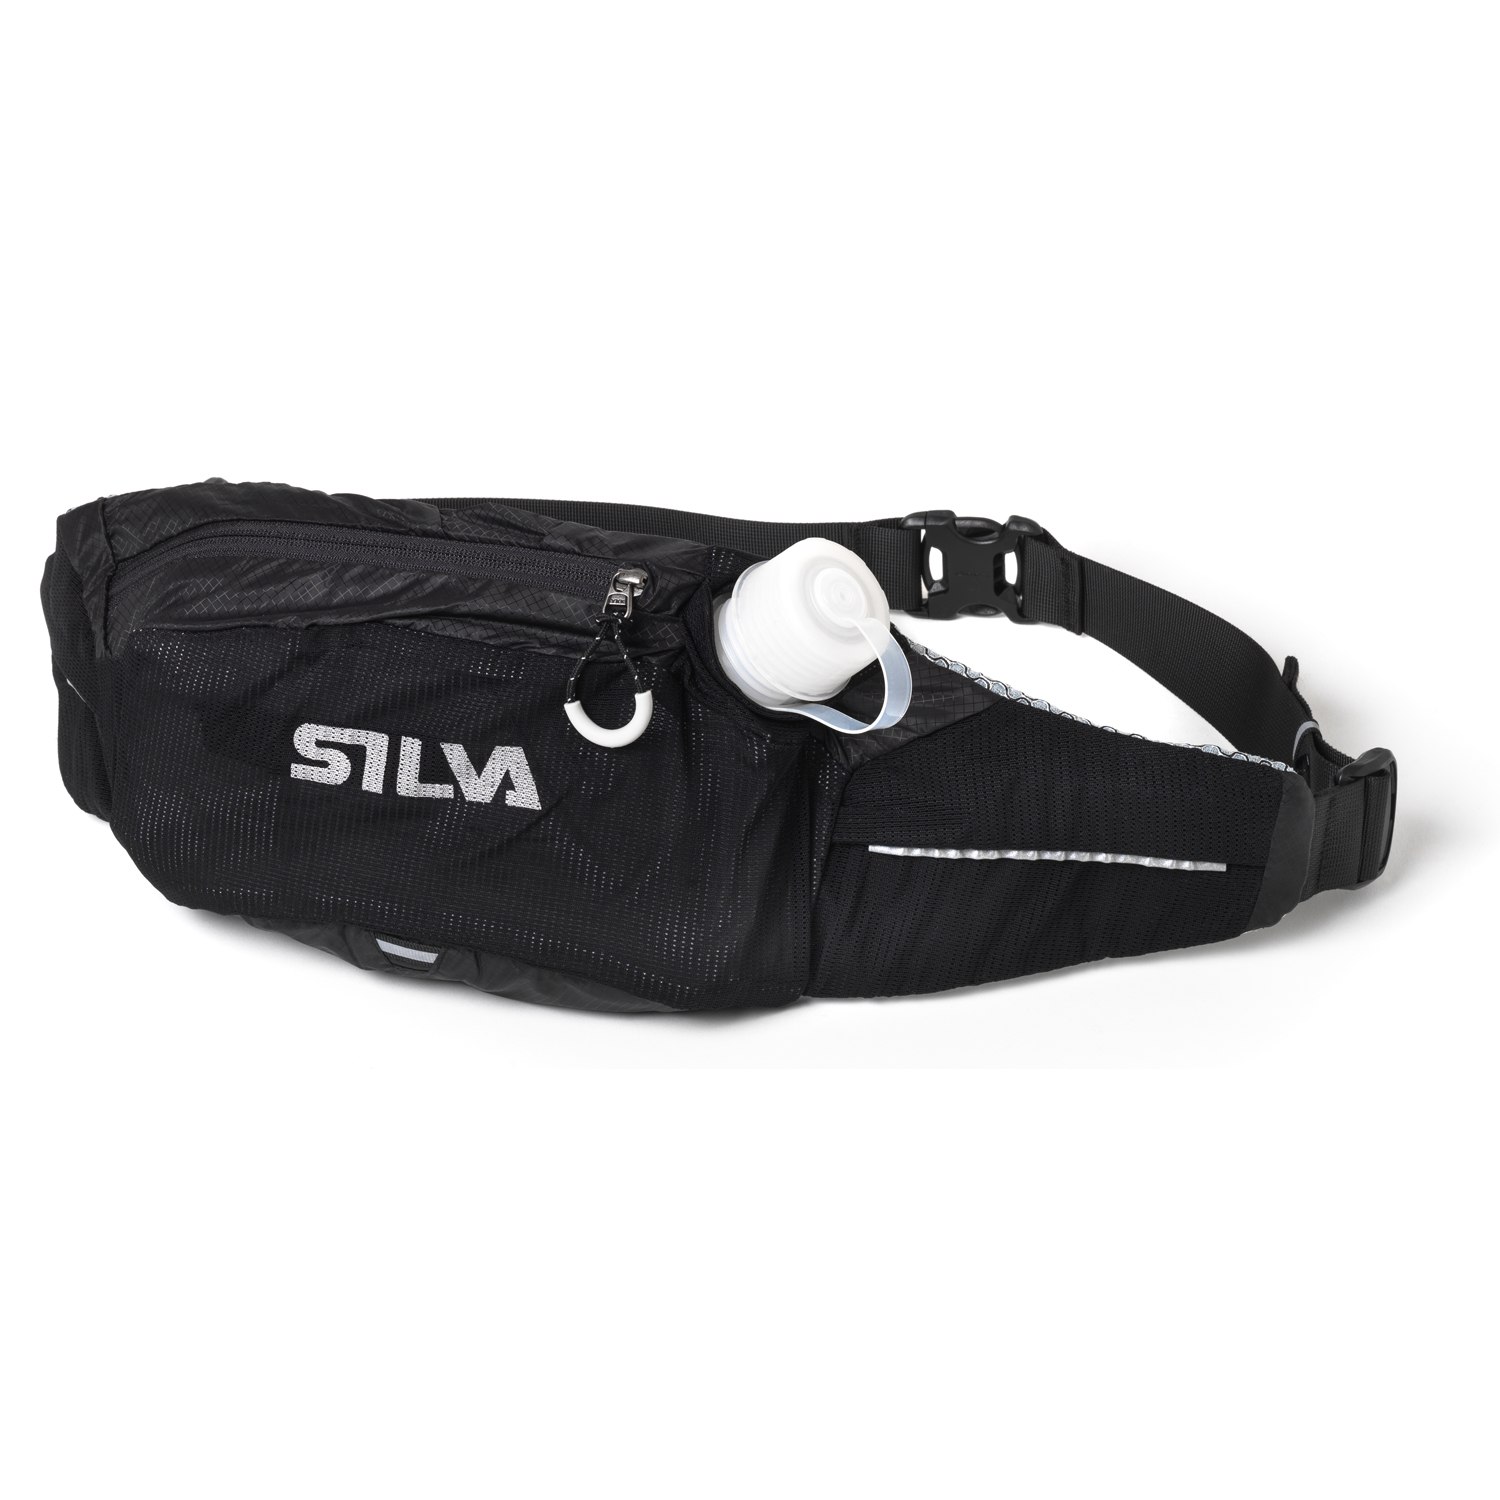 Produktbild von Silva Flow 6X - Trinkgürtel